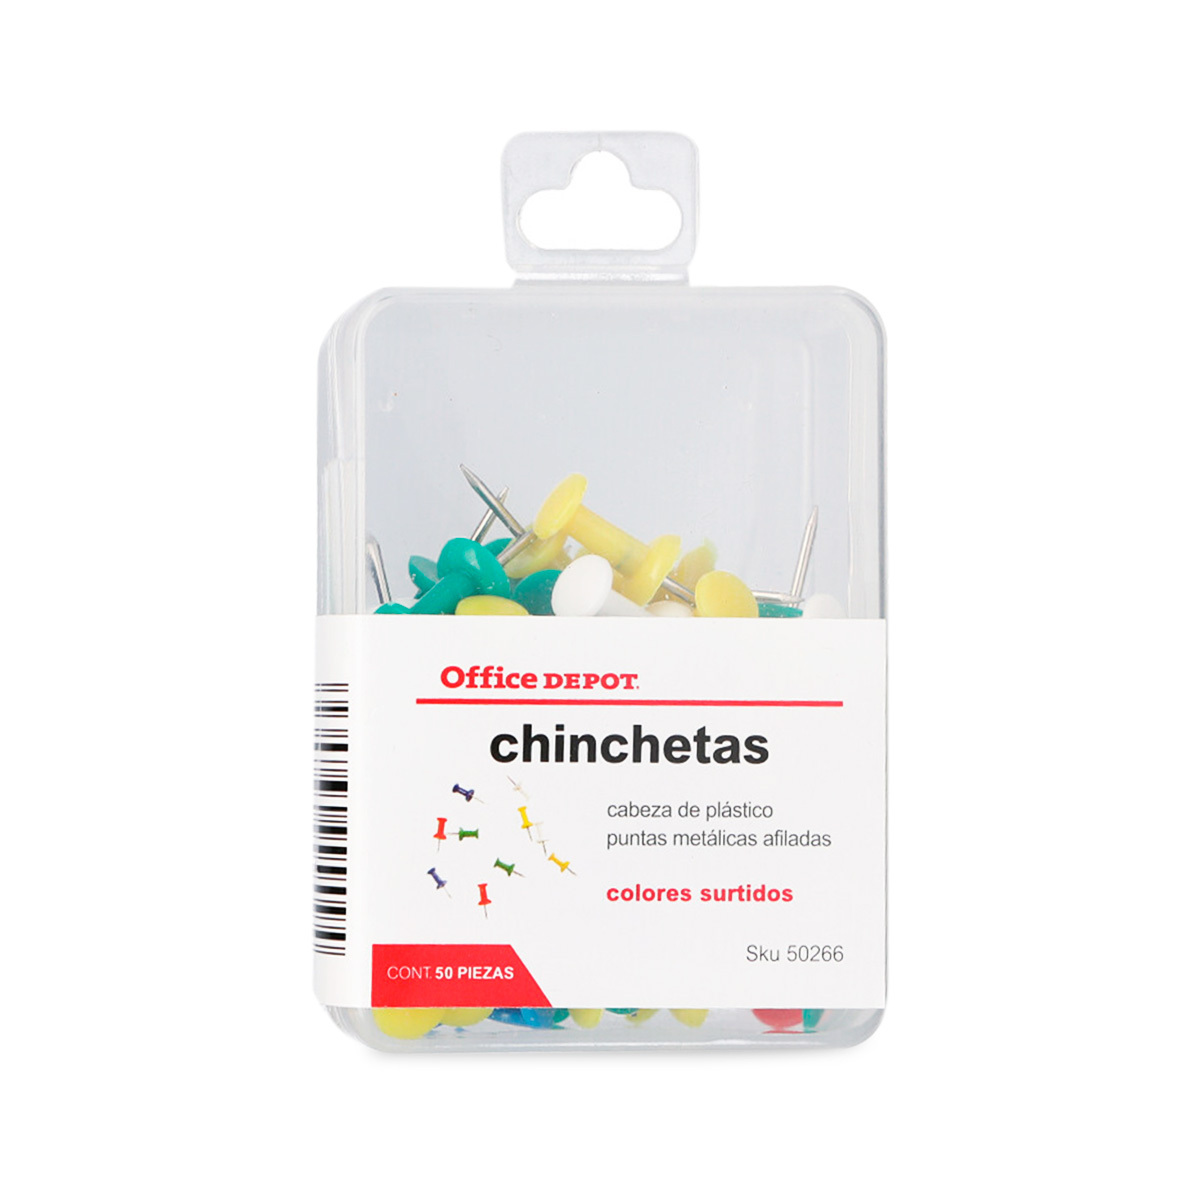 Chinchetas Office Depot / Colores surtidos / 50 piezas